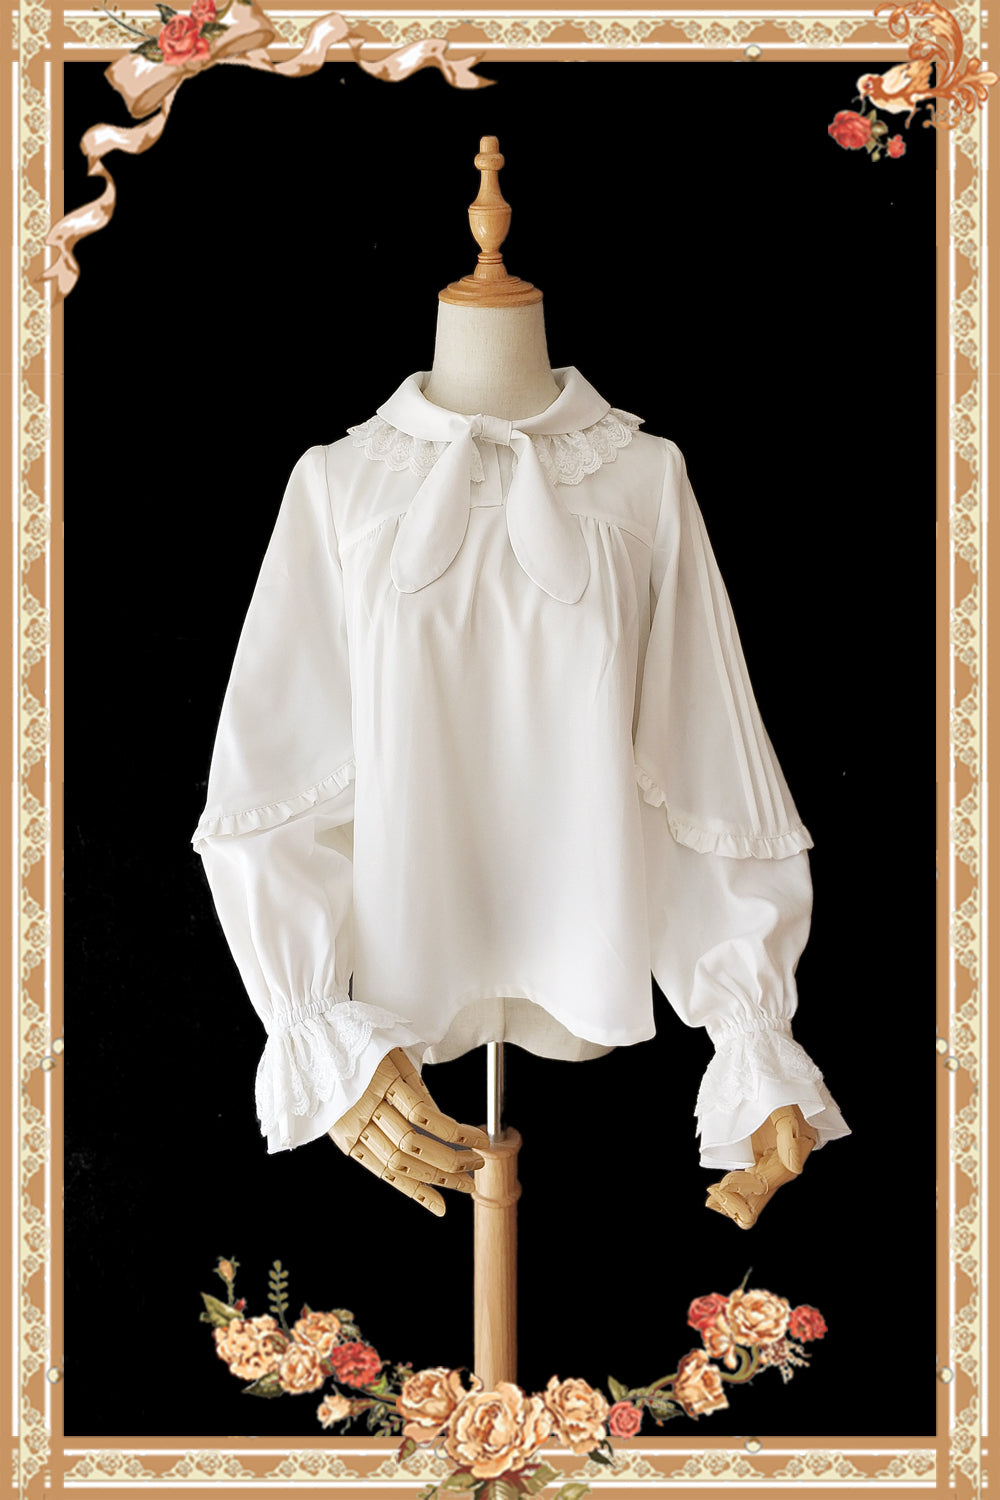 Infanta~Rabbit Ear Tie~Long Bishop Sleeves Lolita Blouse free size cream white 